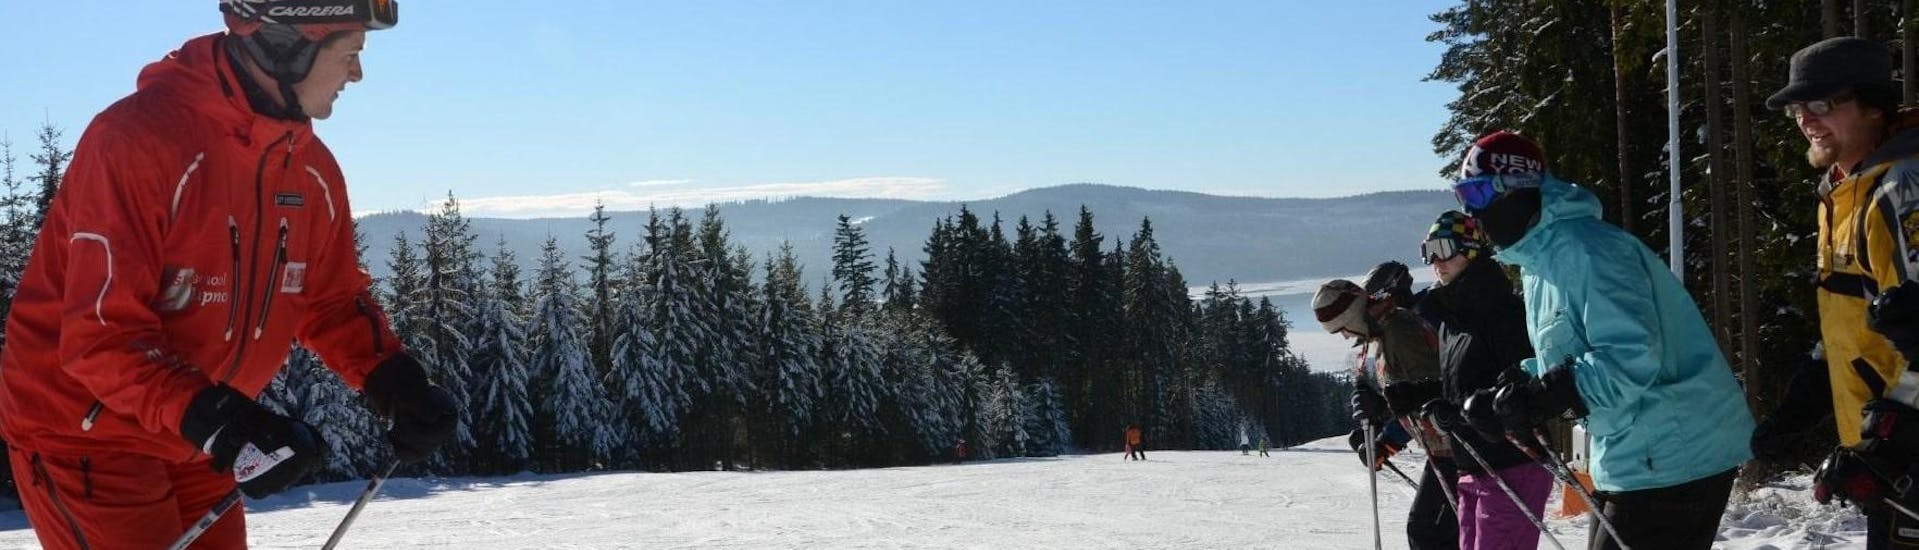 Skilessen voor volwassenen vanaf 16 jaar voor alle niveaus.